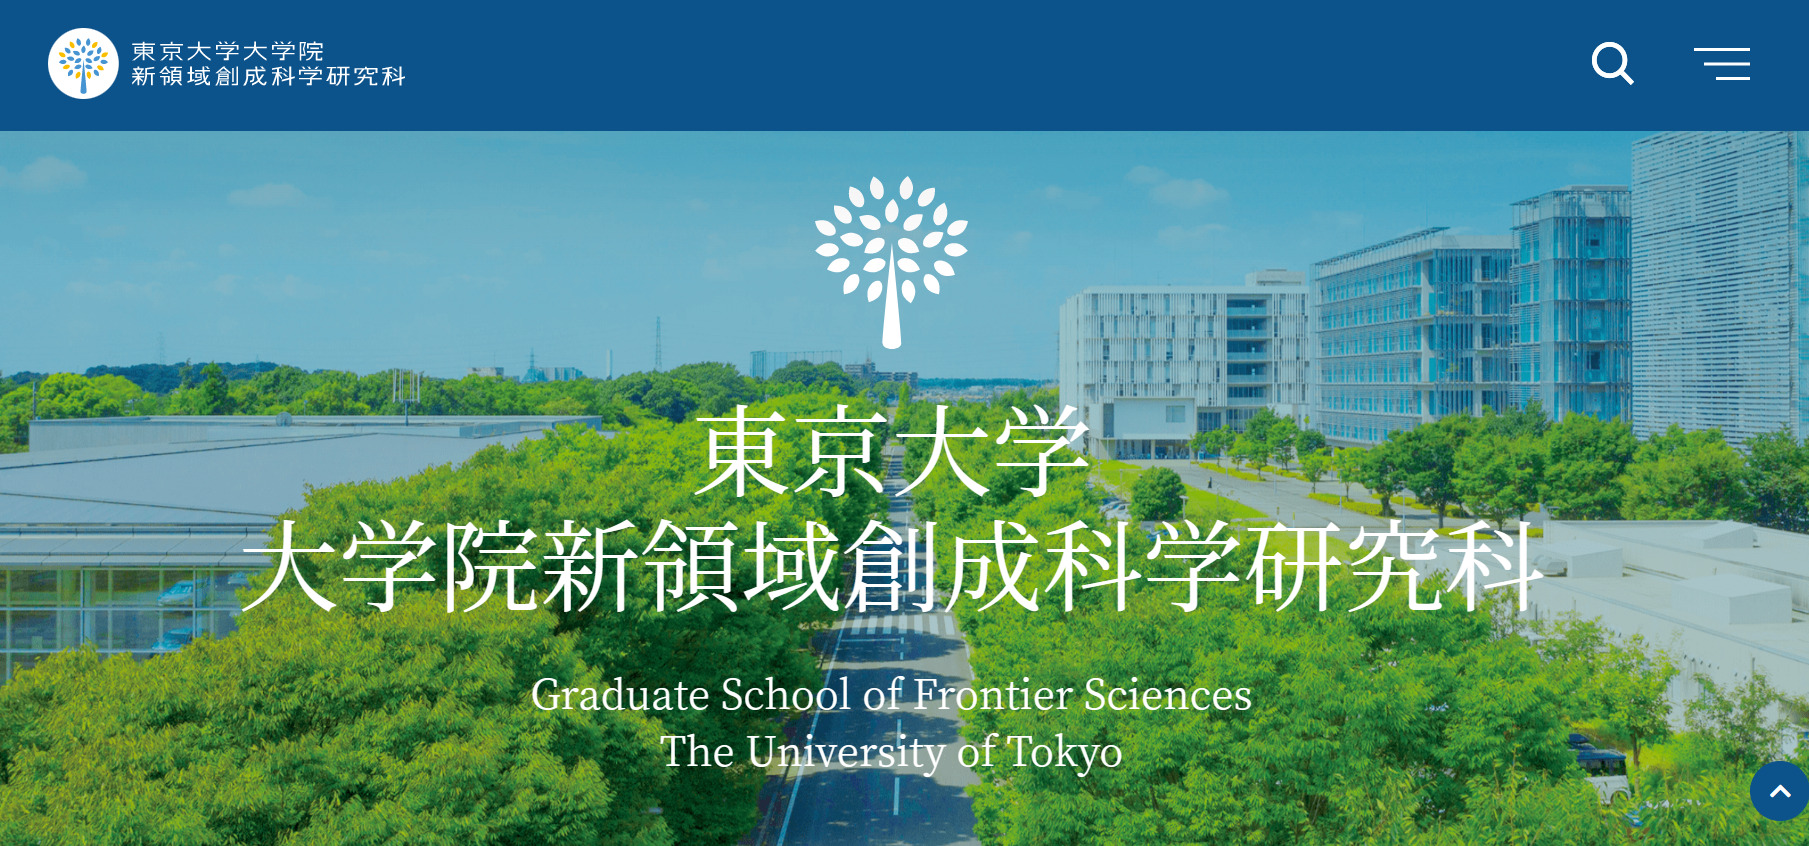 東京大学大学院のトップページ